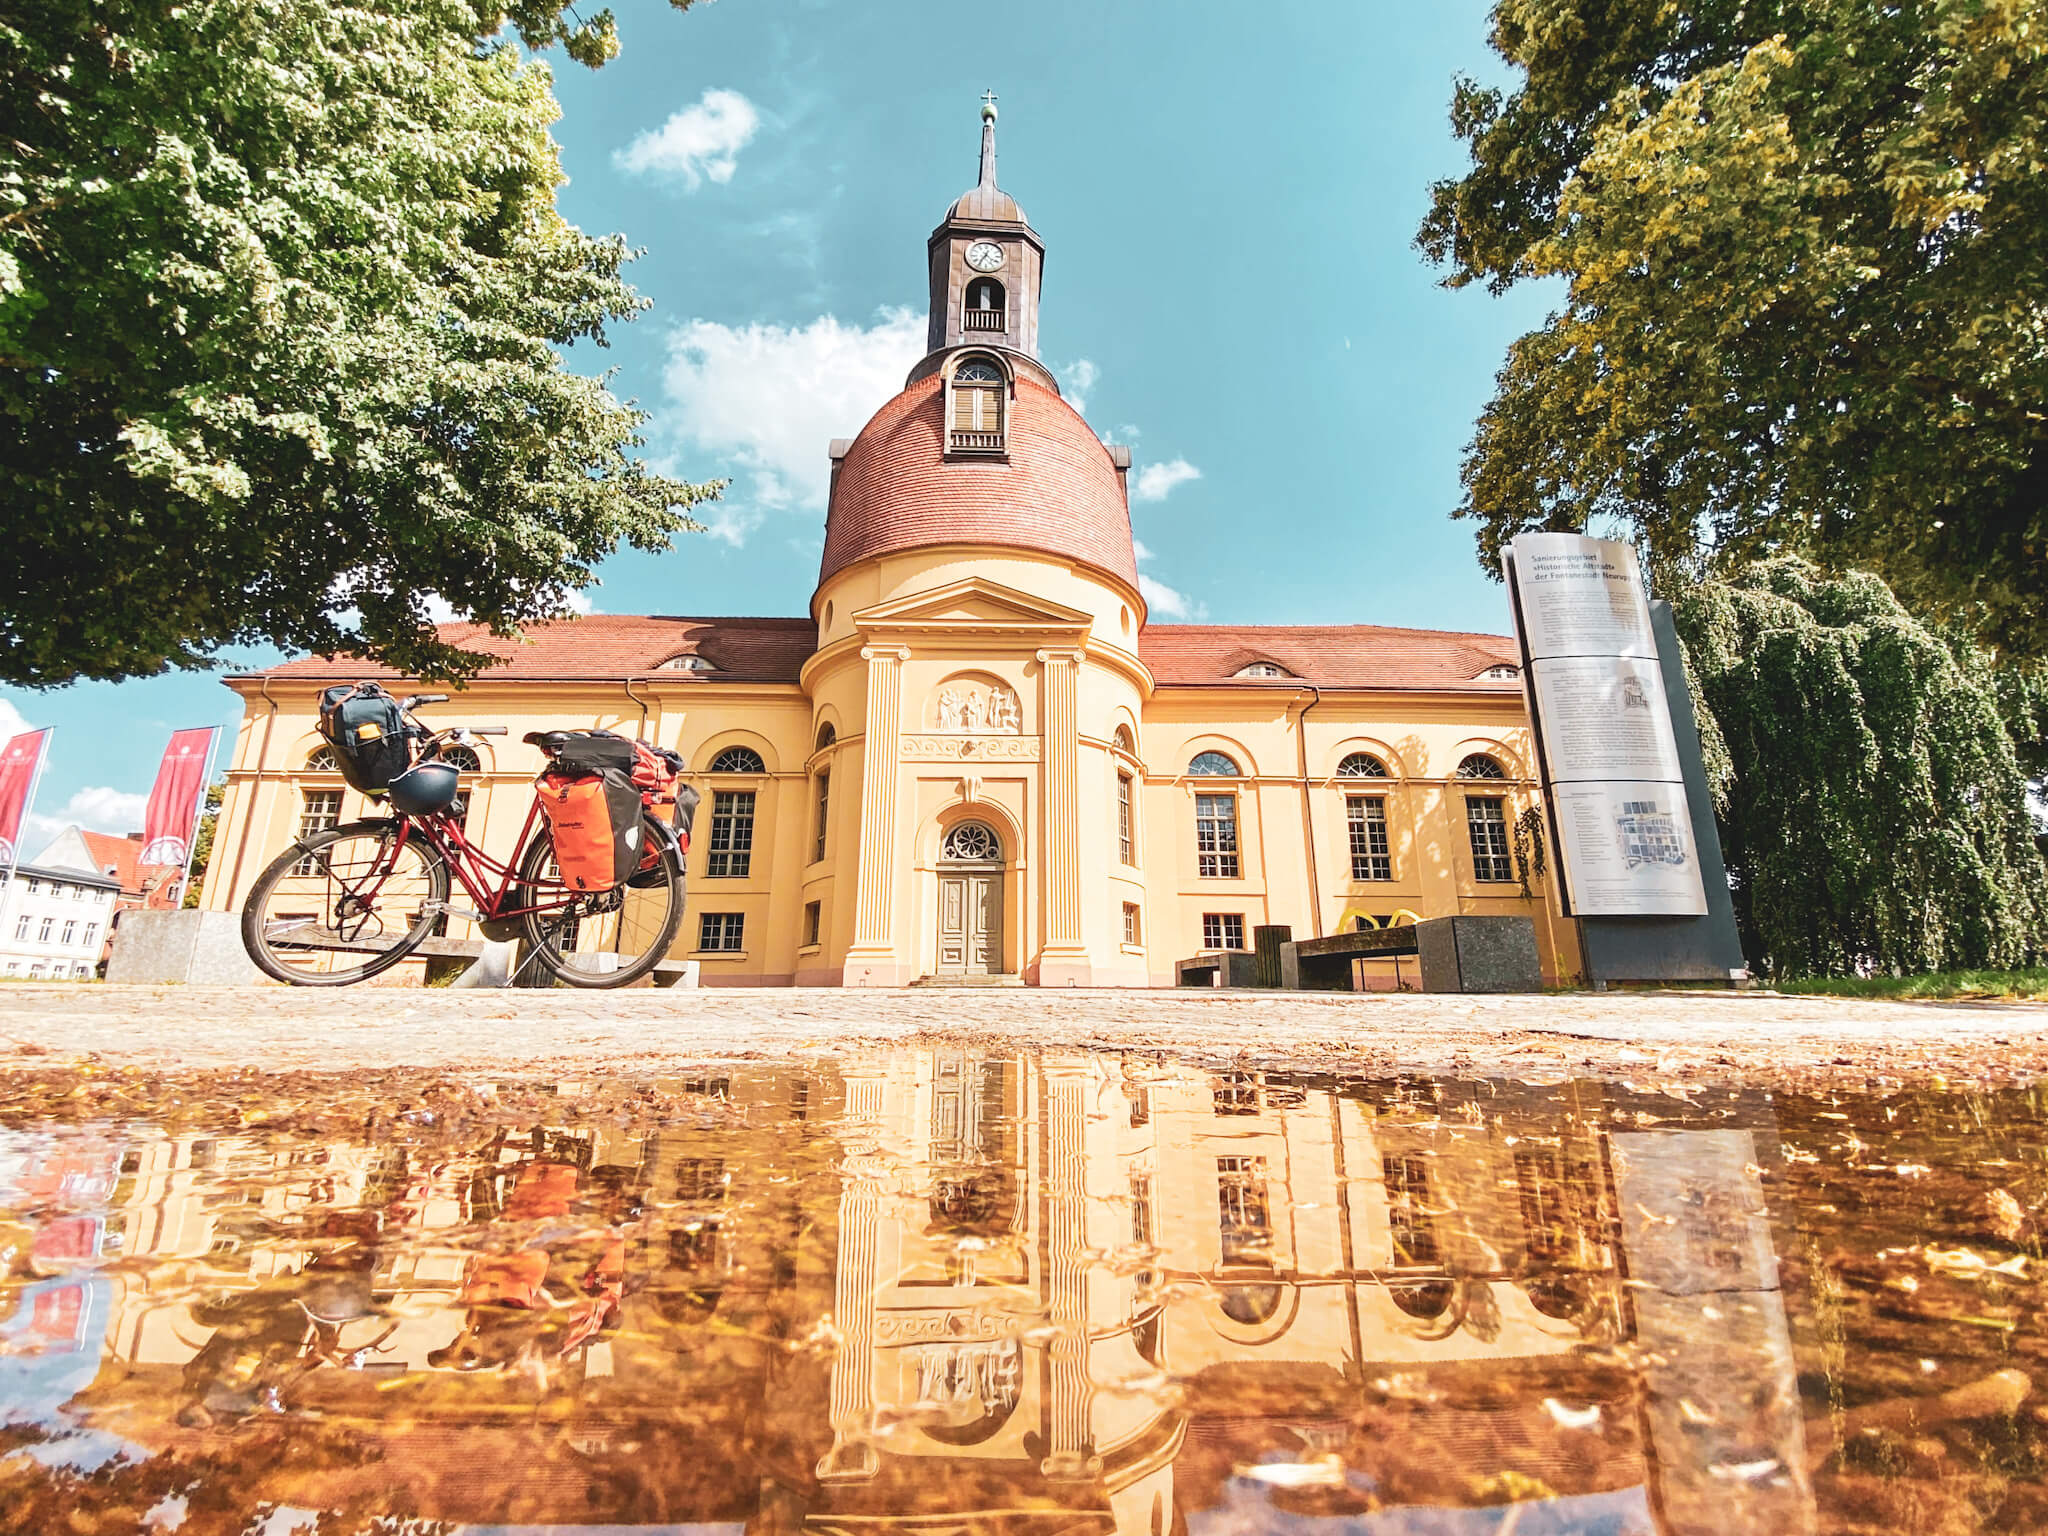 Spiegelung mit Fahrrad in Neuruppin